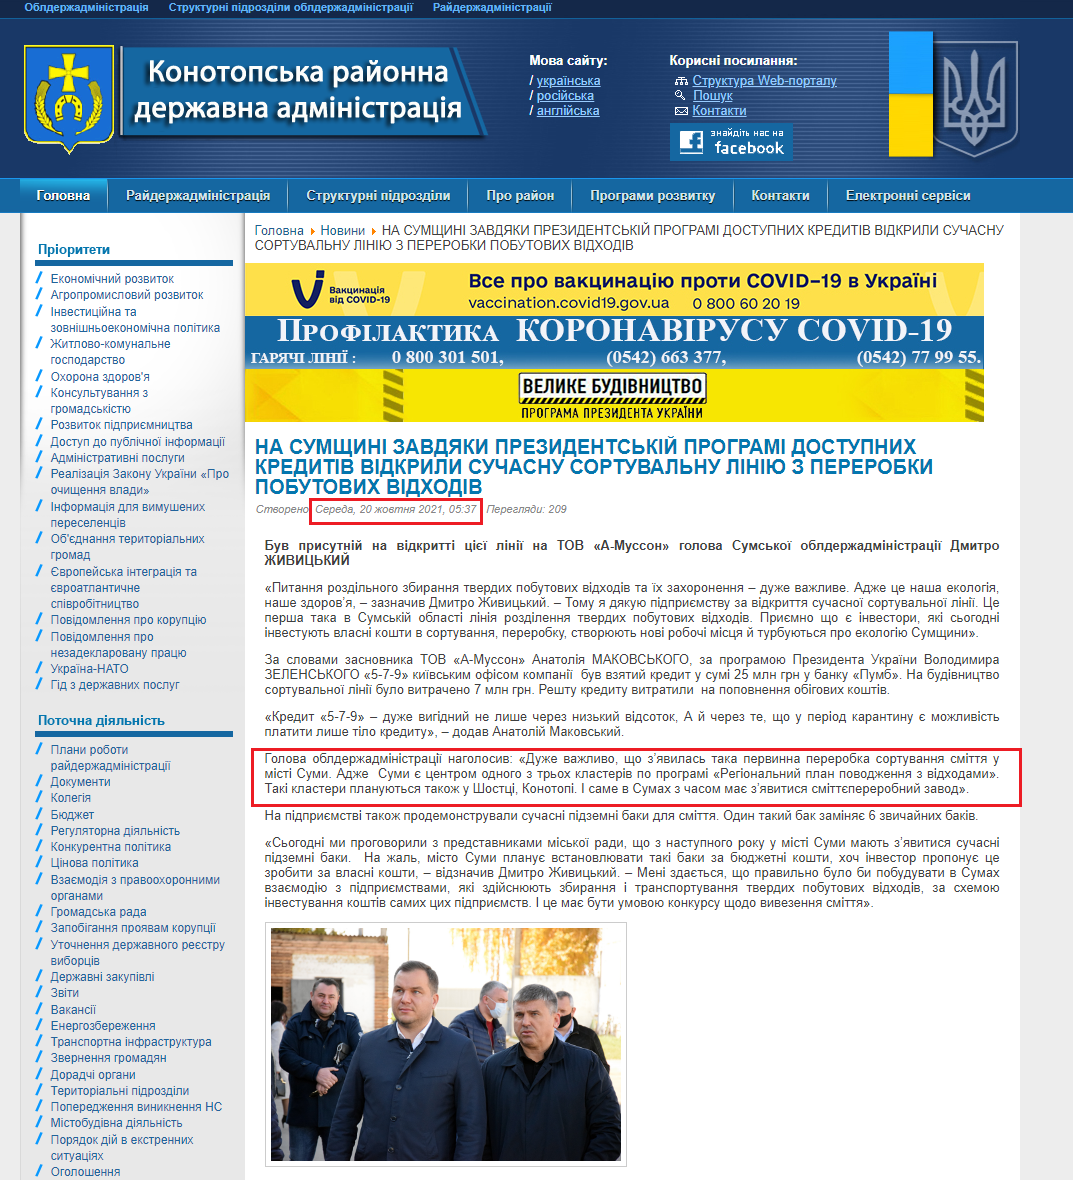 http://knt.sm.gov.ua/index.php/uk/8-novini/16997-na-sumshchini-zavdyaki-prezidentskij-programi-dostupnikh-kreditiv-vidkrili-suchasnu-sortuvalnu-liniyu-z-pererobki-pobutovikh-vidkhodiv